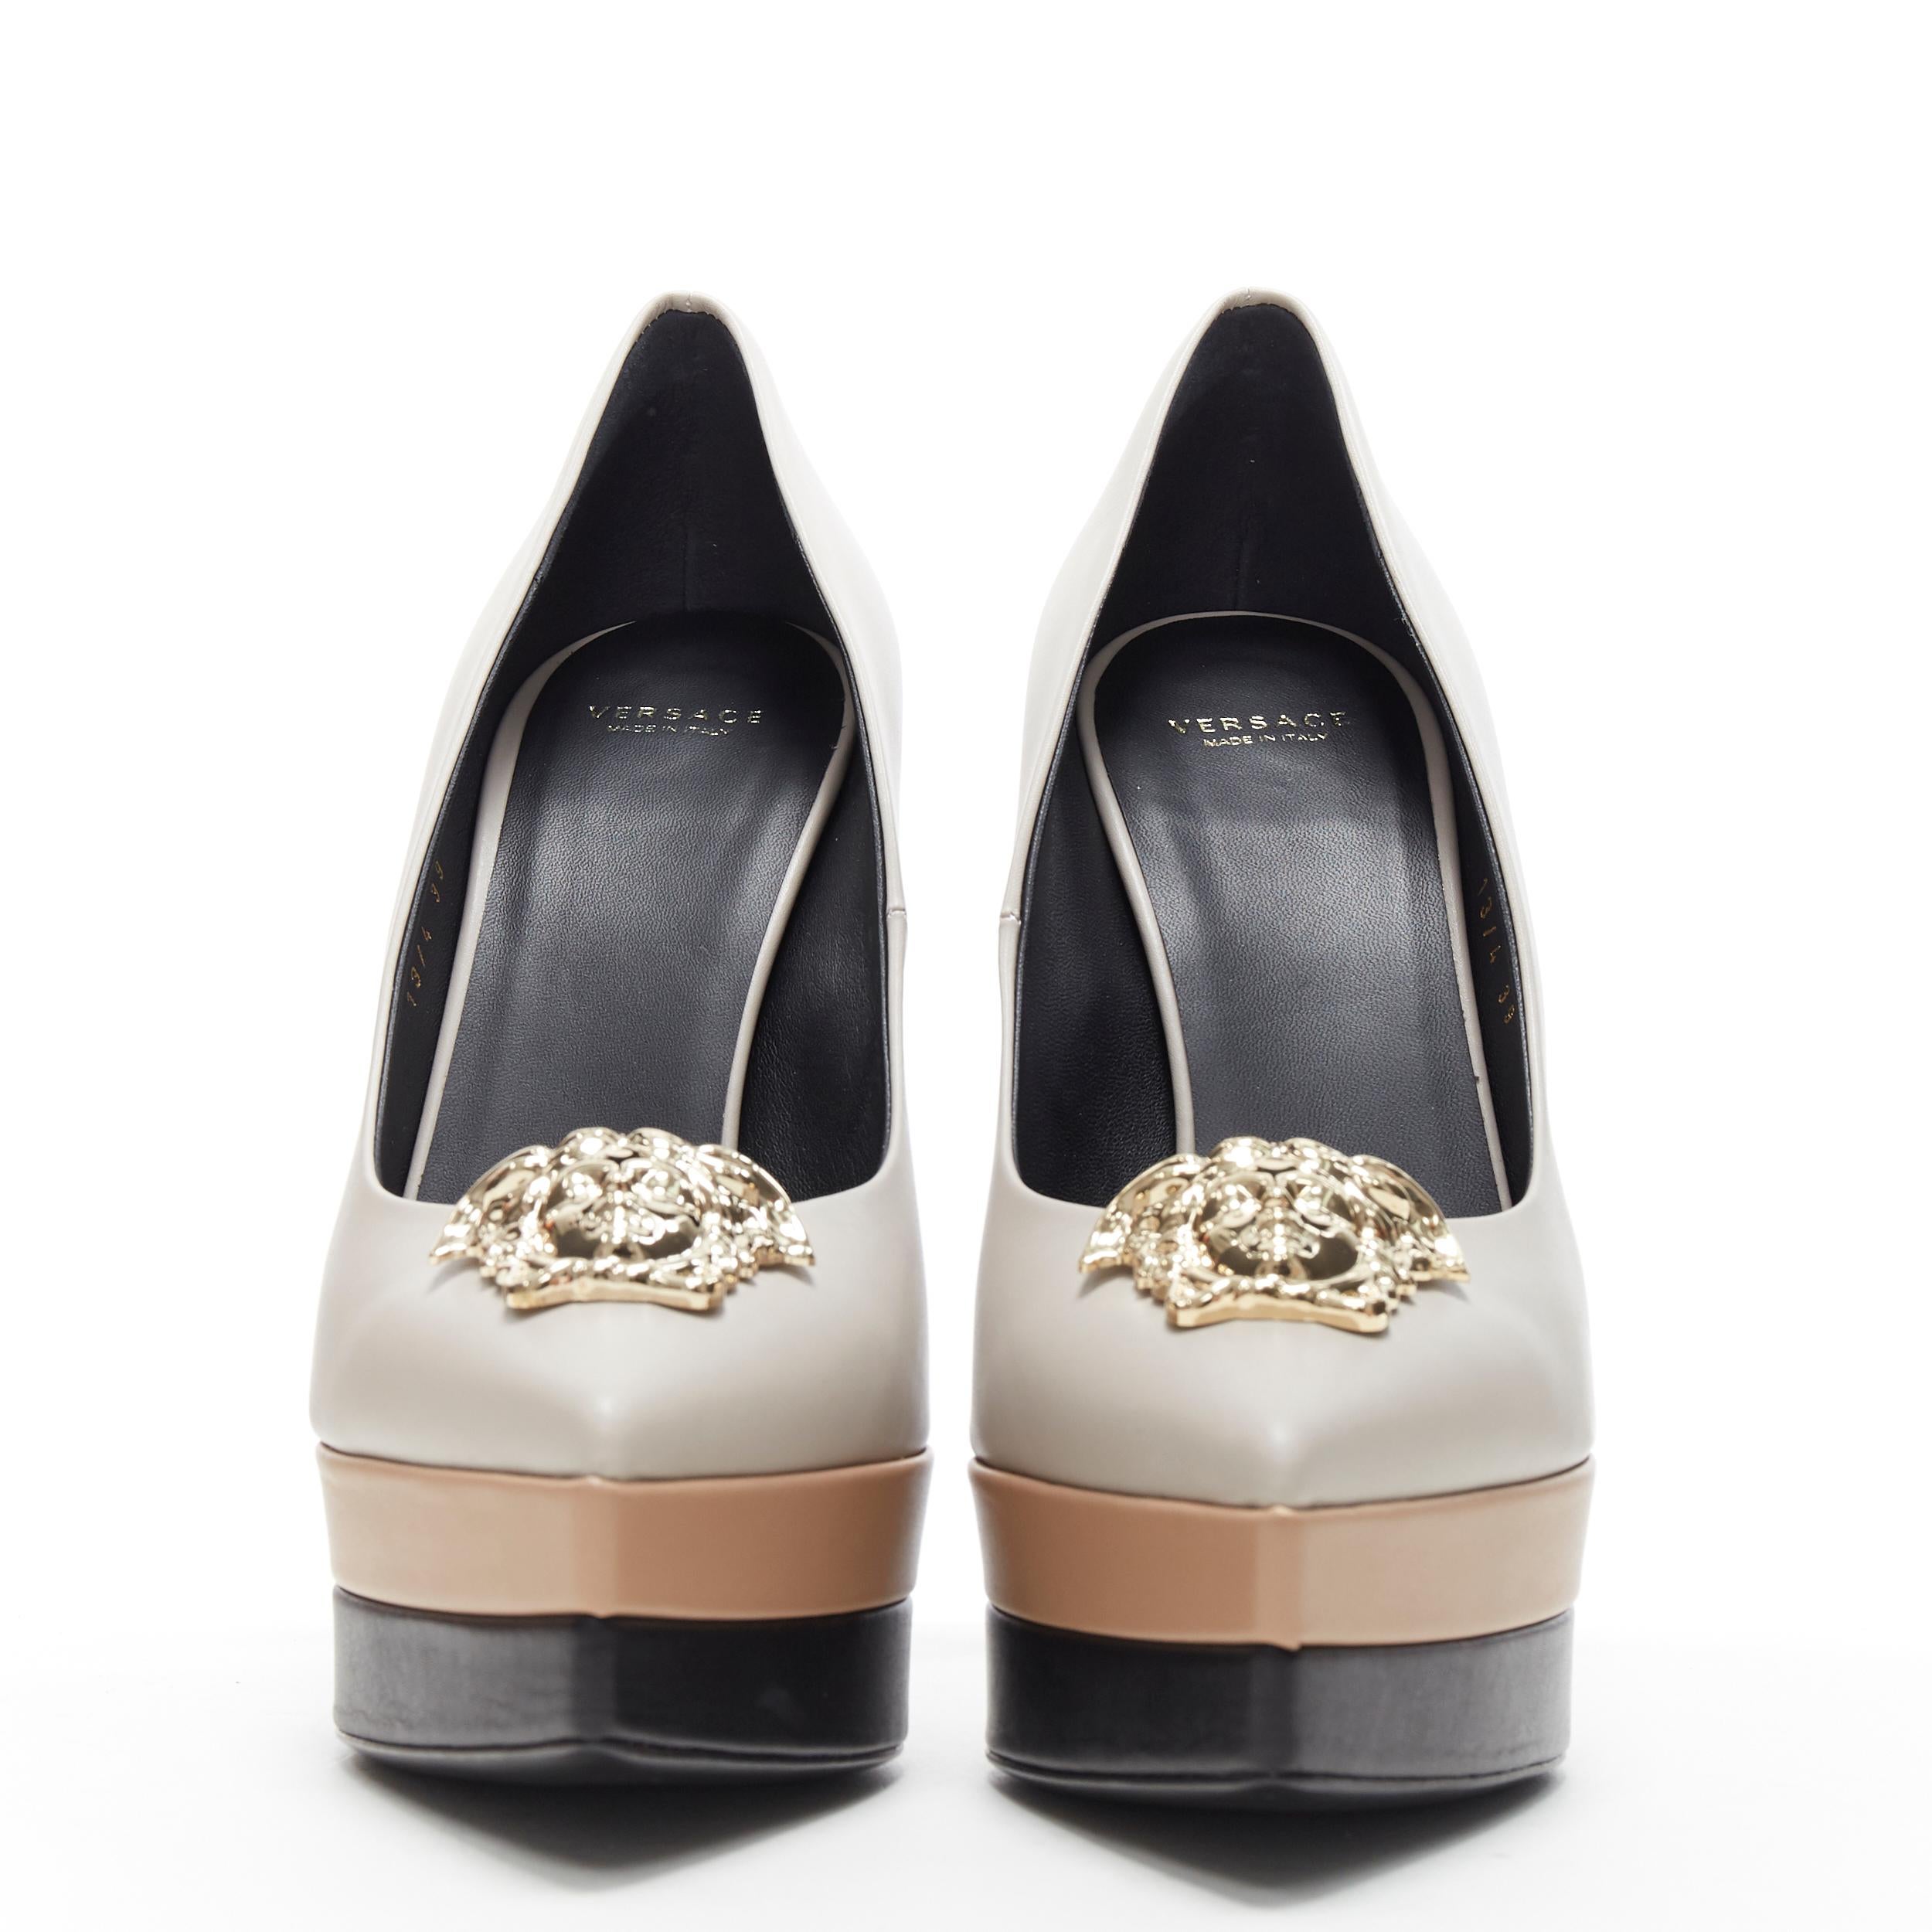 versace heels silver